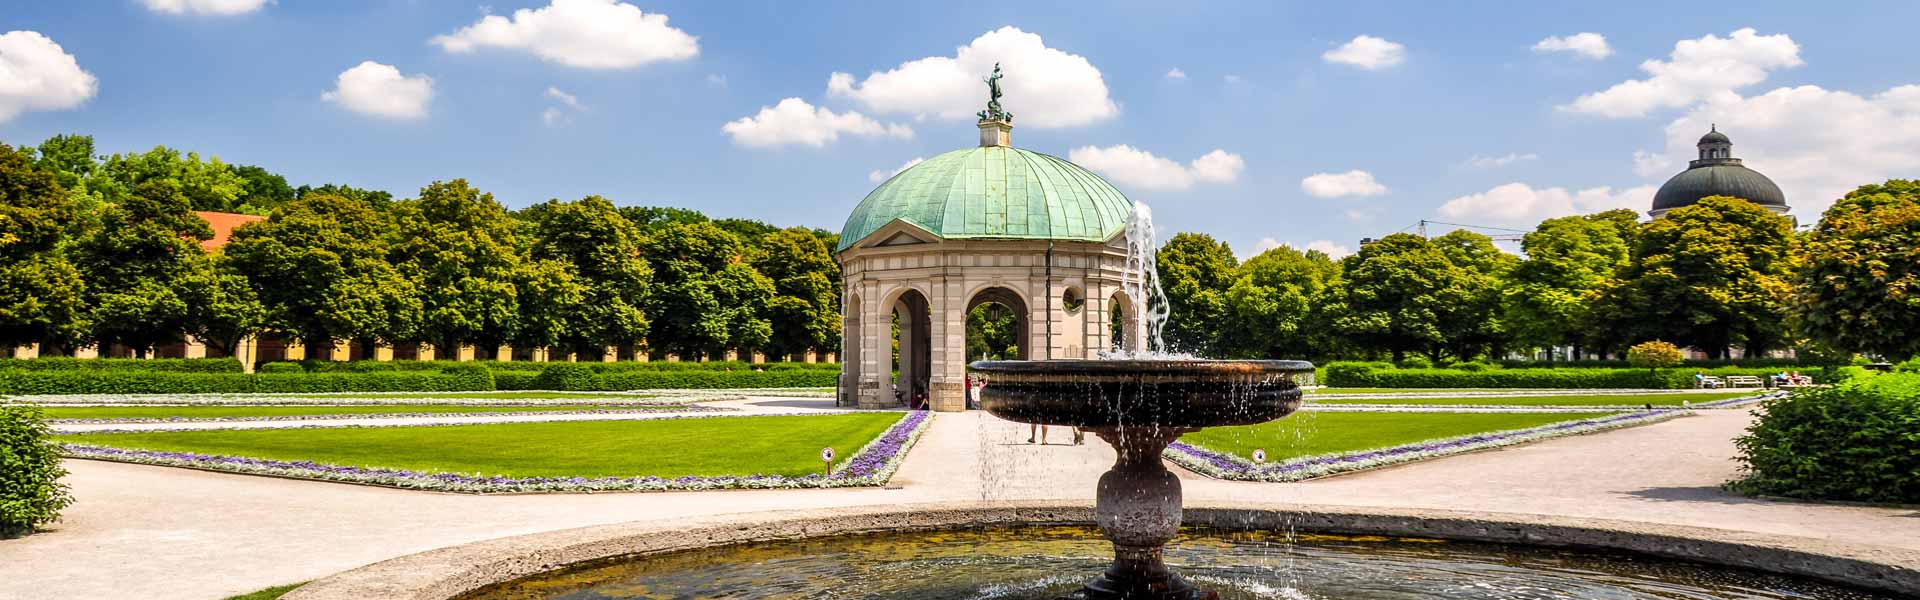 Schleuder, staunen, genießen: Englischer Garten in München